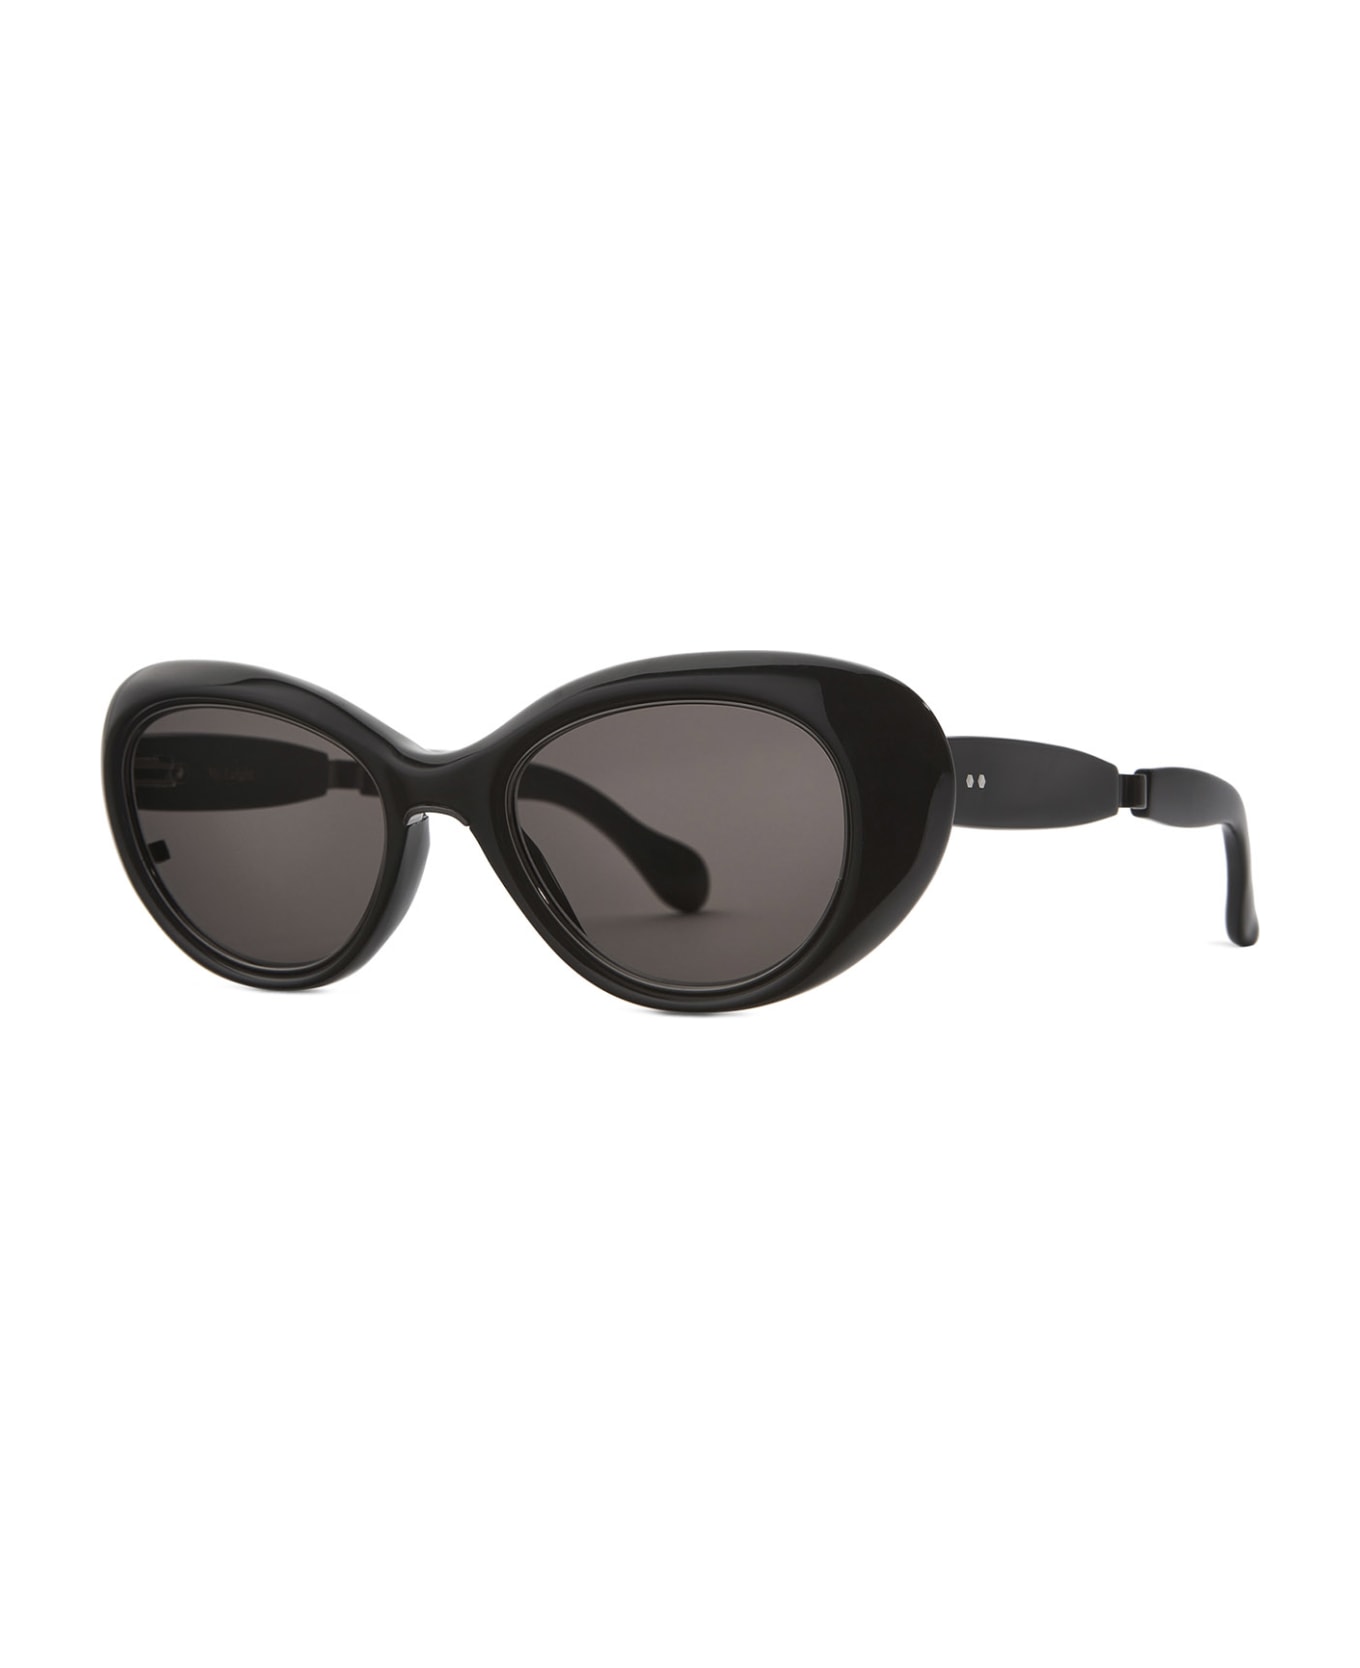 Mr. Leight Selma S Black Sunglasses - Black